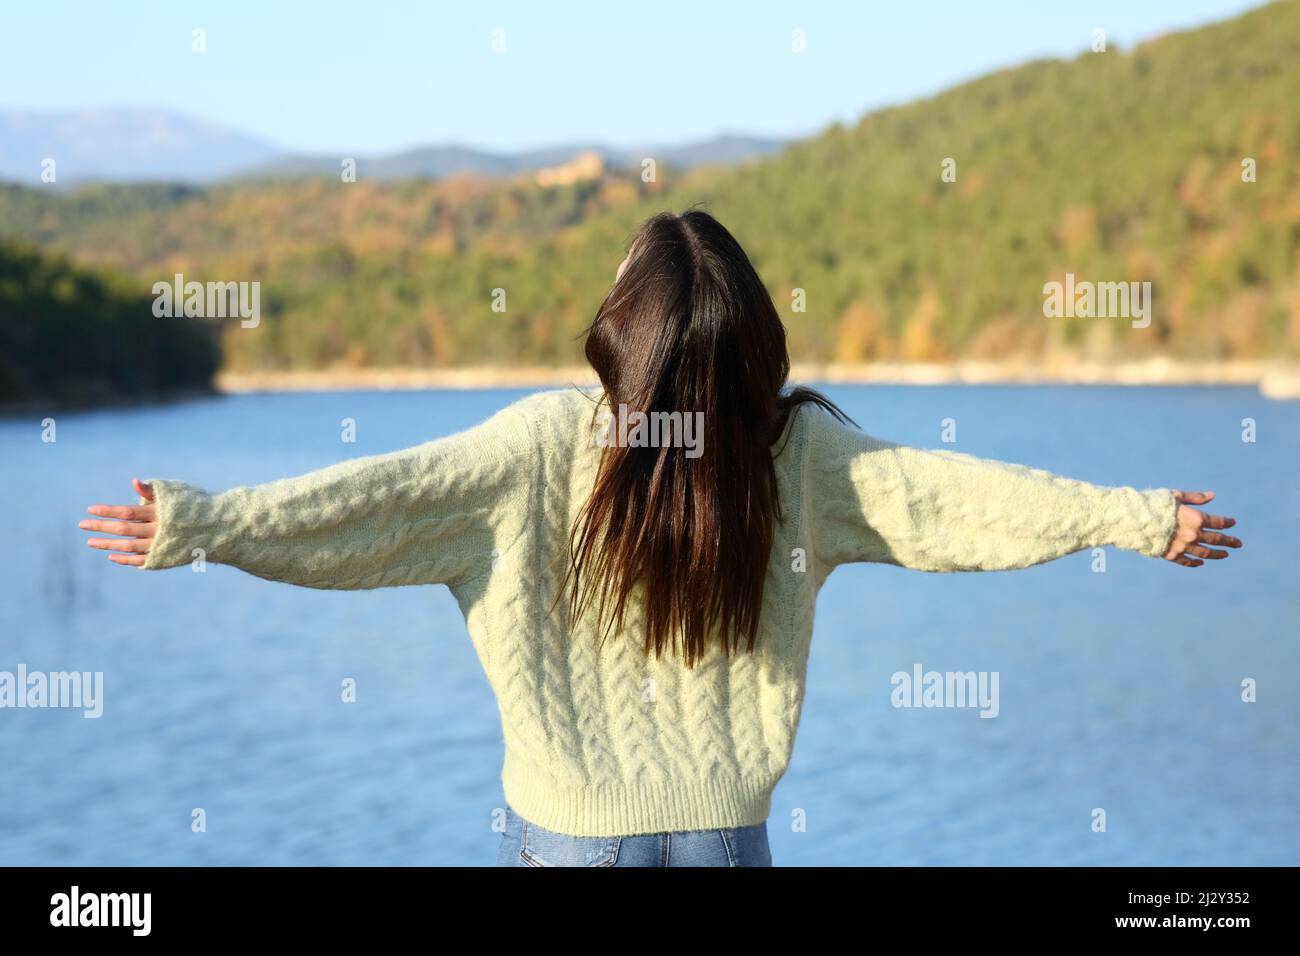 BAK-Blick auf eine Frau, die ihre Arme ausstreckt und Urlaub im Winter in der Natur feiert Stockfoto